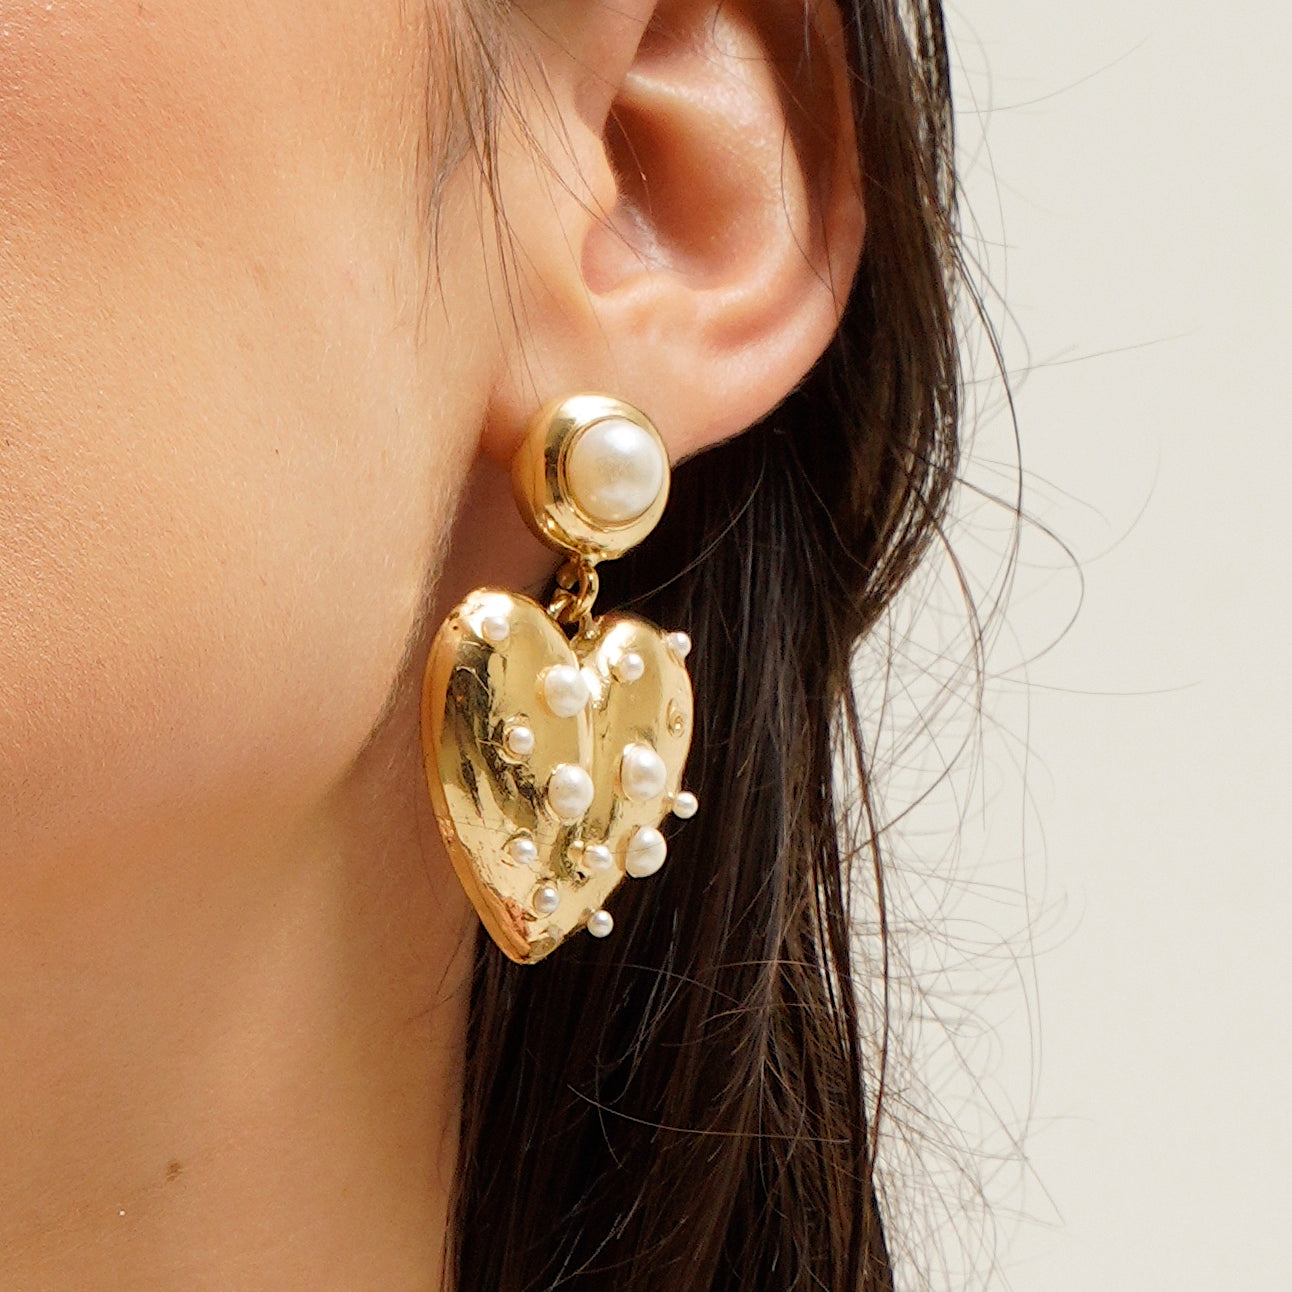 TFC 18K Love Bump Gold Plated Dangler Earrings